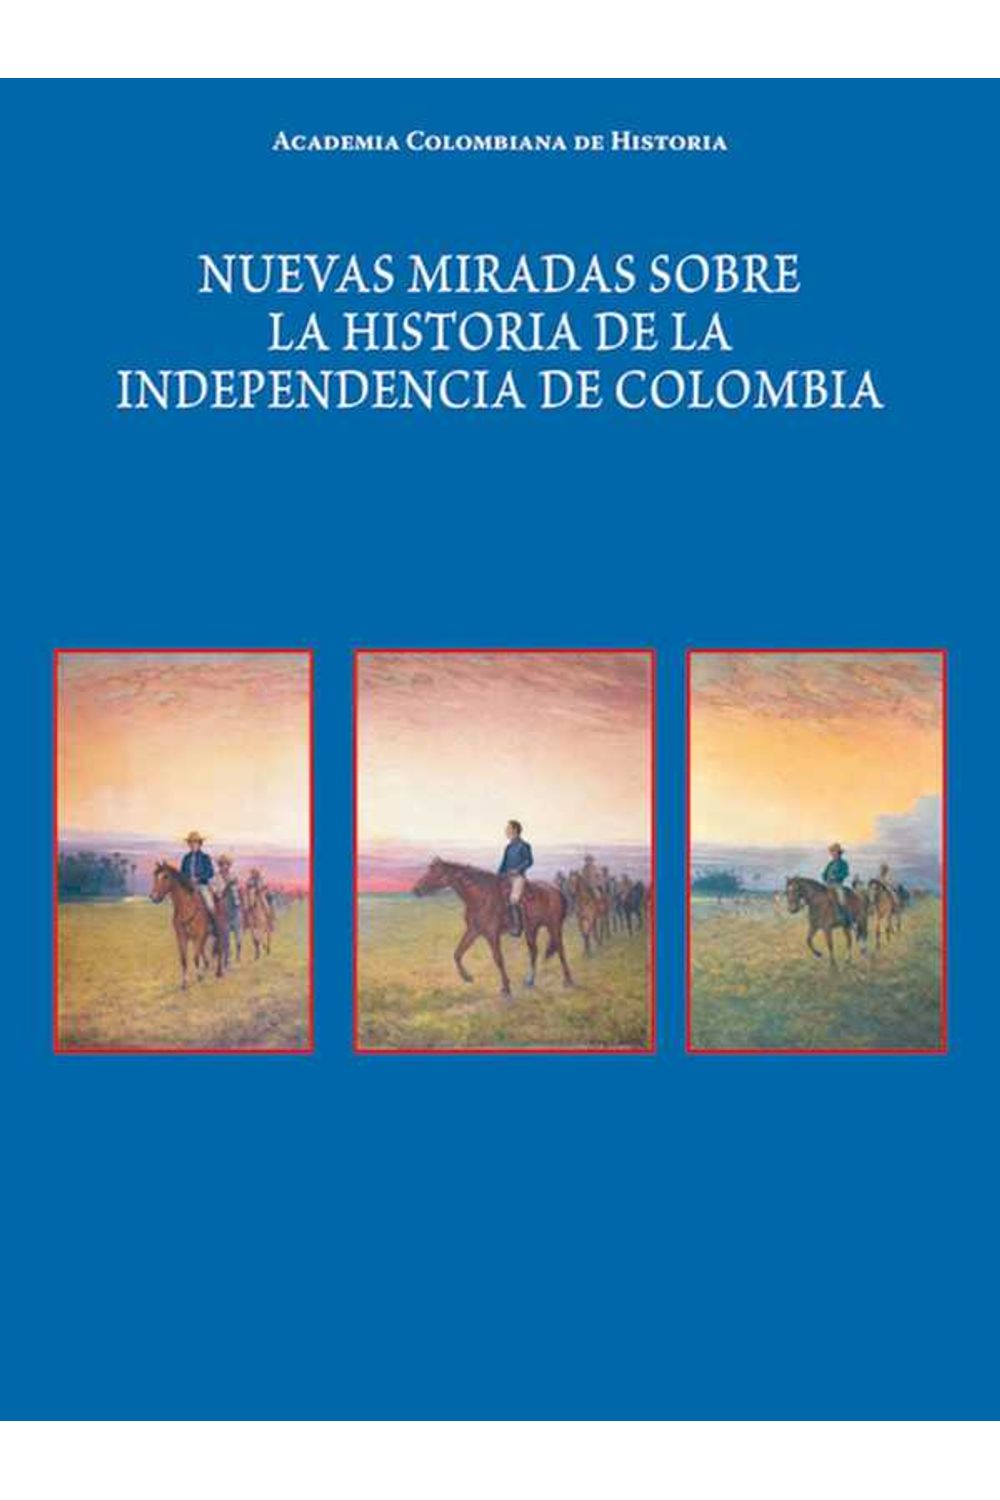 bw-nuevas-miradas-sobre-la-historia-de-la-independencia-de-colombia-academia-colombiana-de-historia-9789585154377